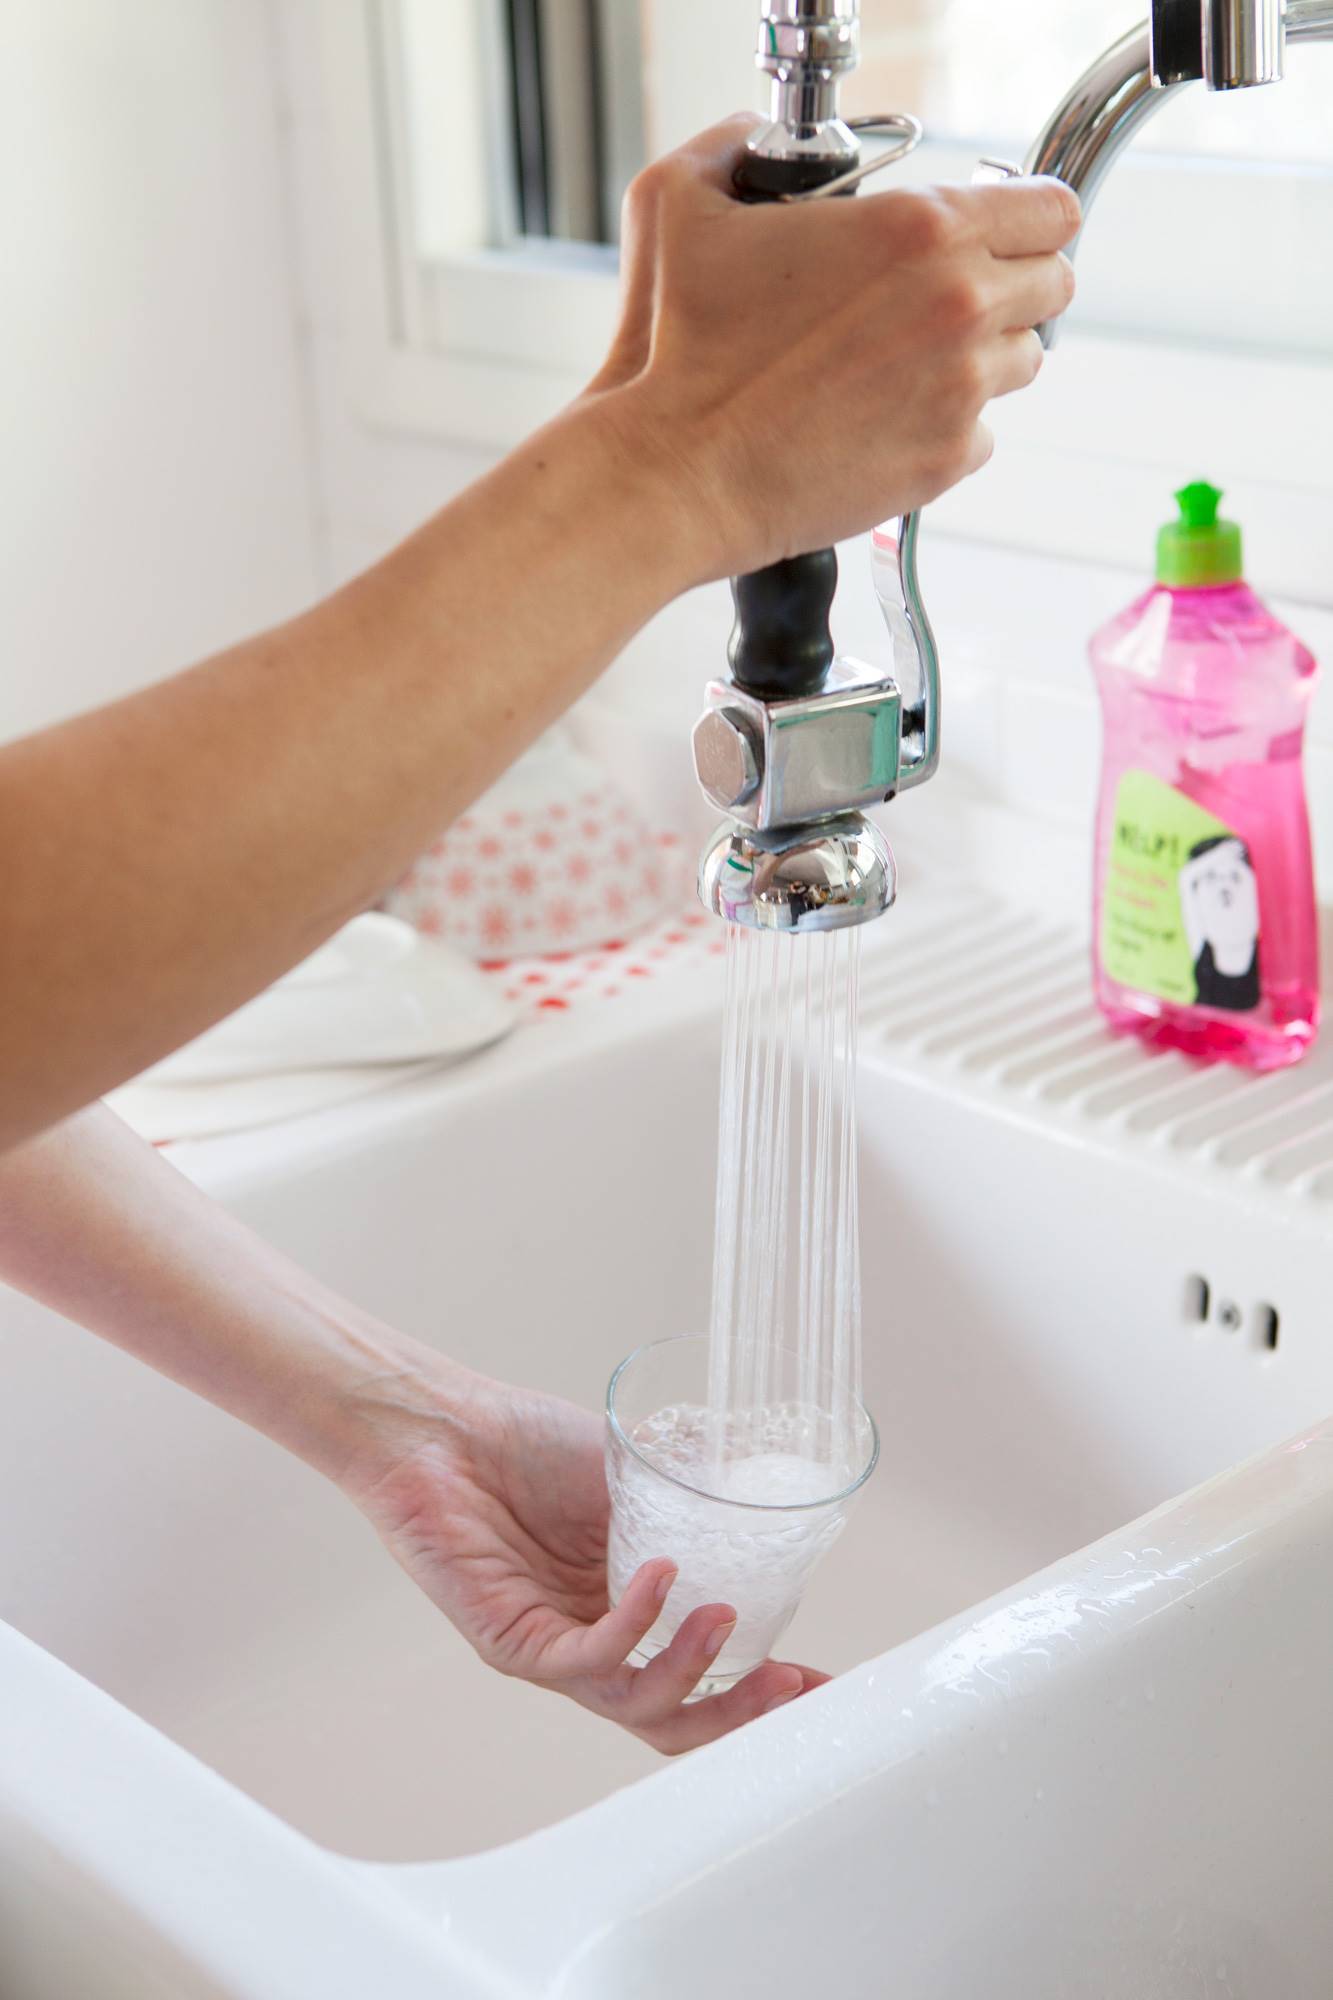 lavar los platos a mano o con lavavajillas